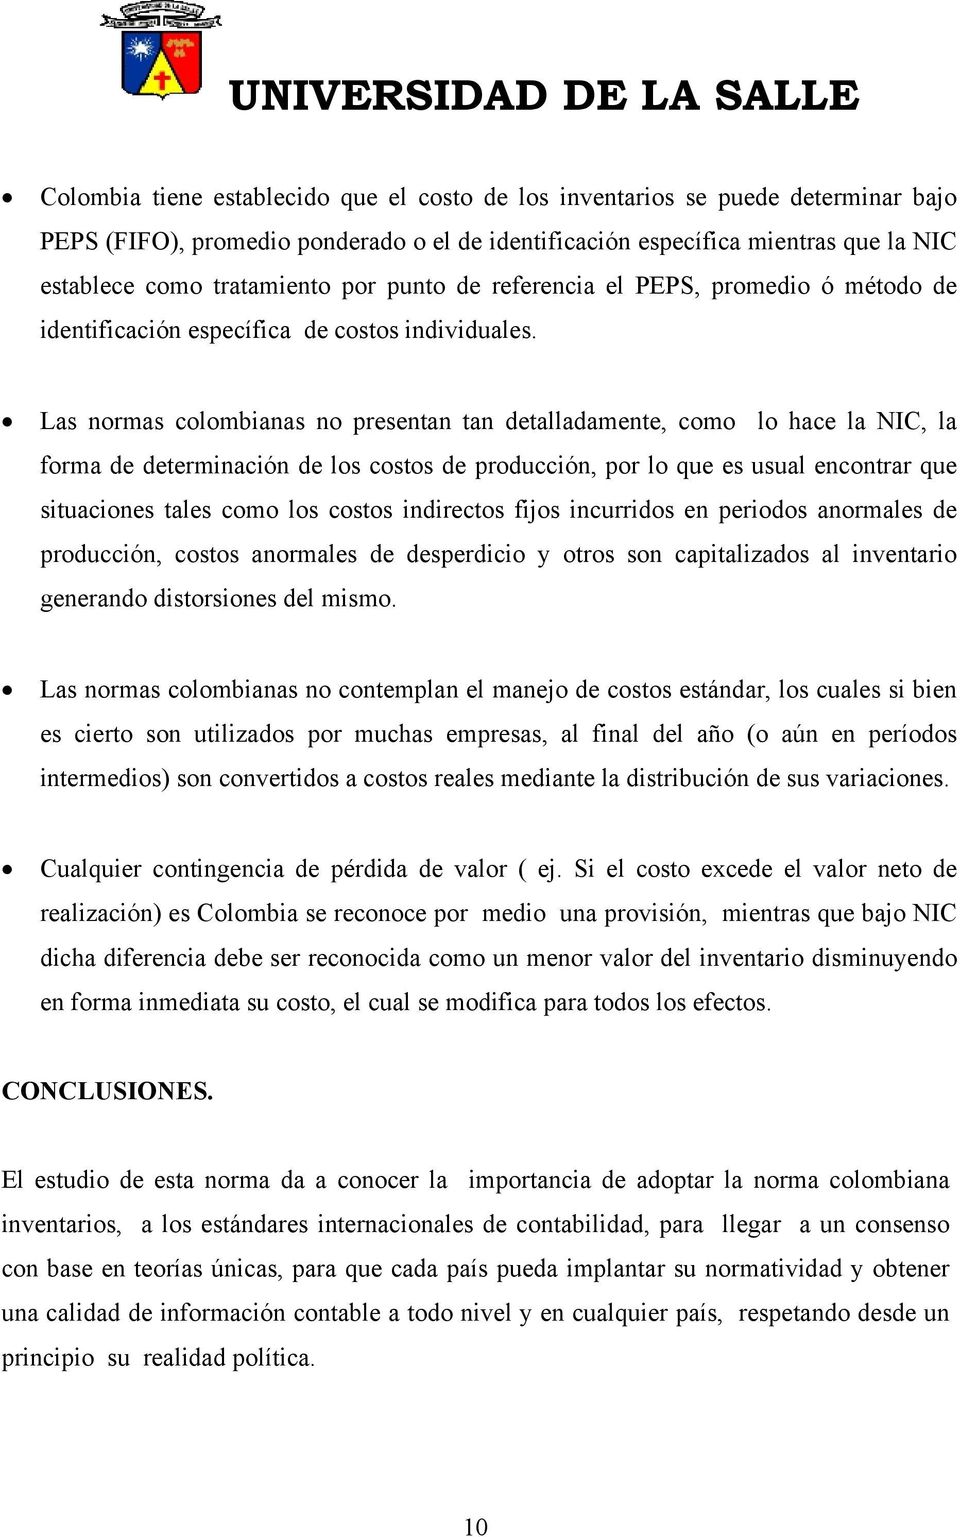 Las normas colombianas no presentan tan detalladamente, como lo hace la NIC, la forma de determinación de los costos de producción, por lo que es usual encontrar que situaciones tales como los costos